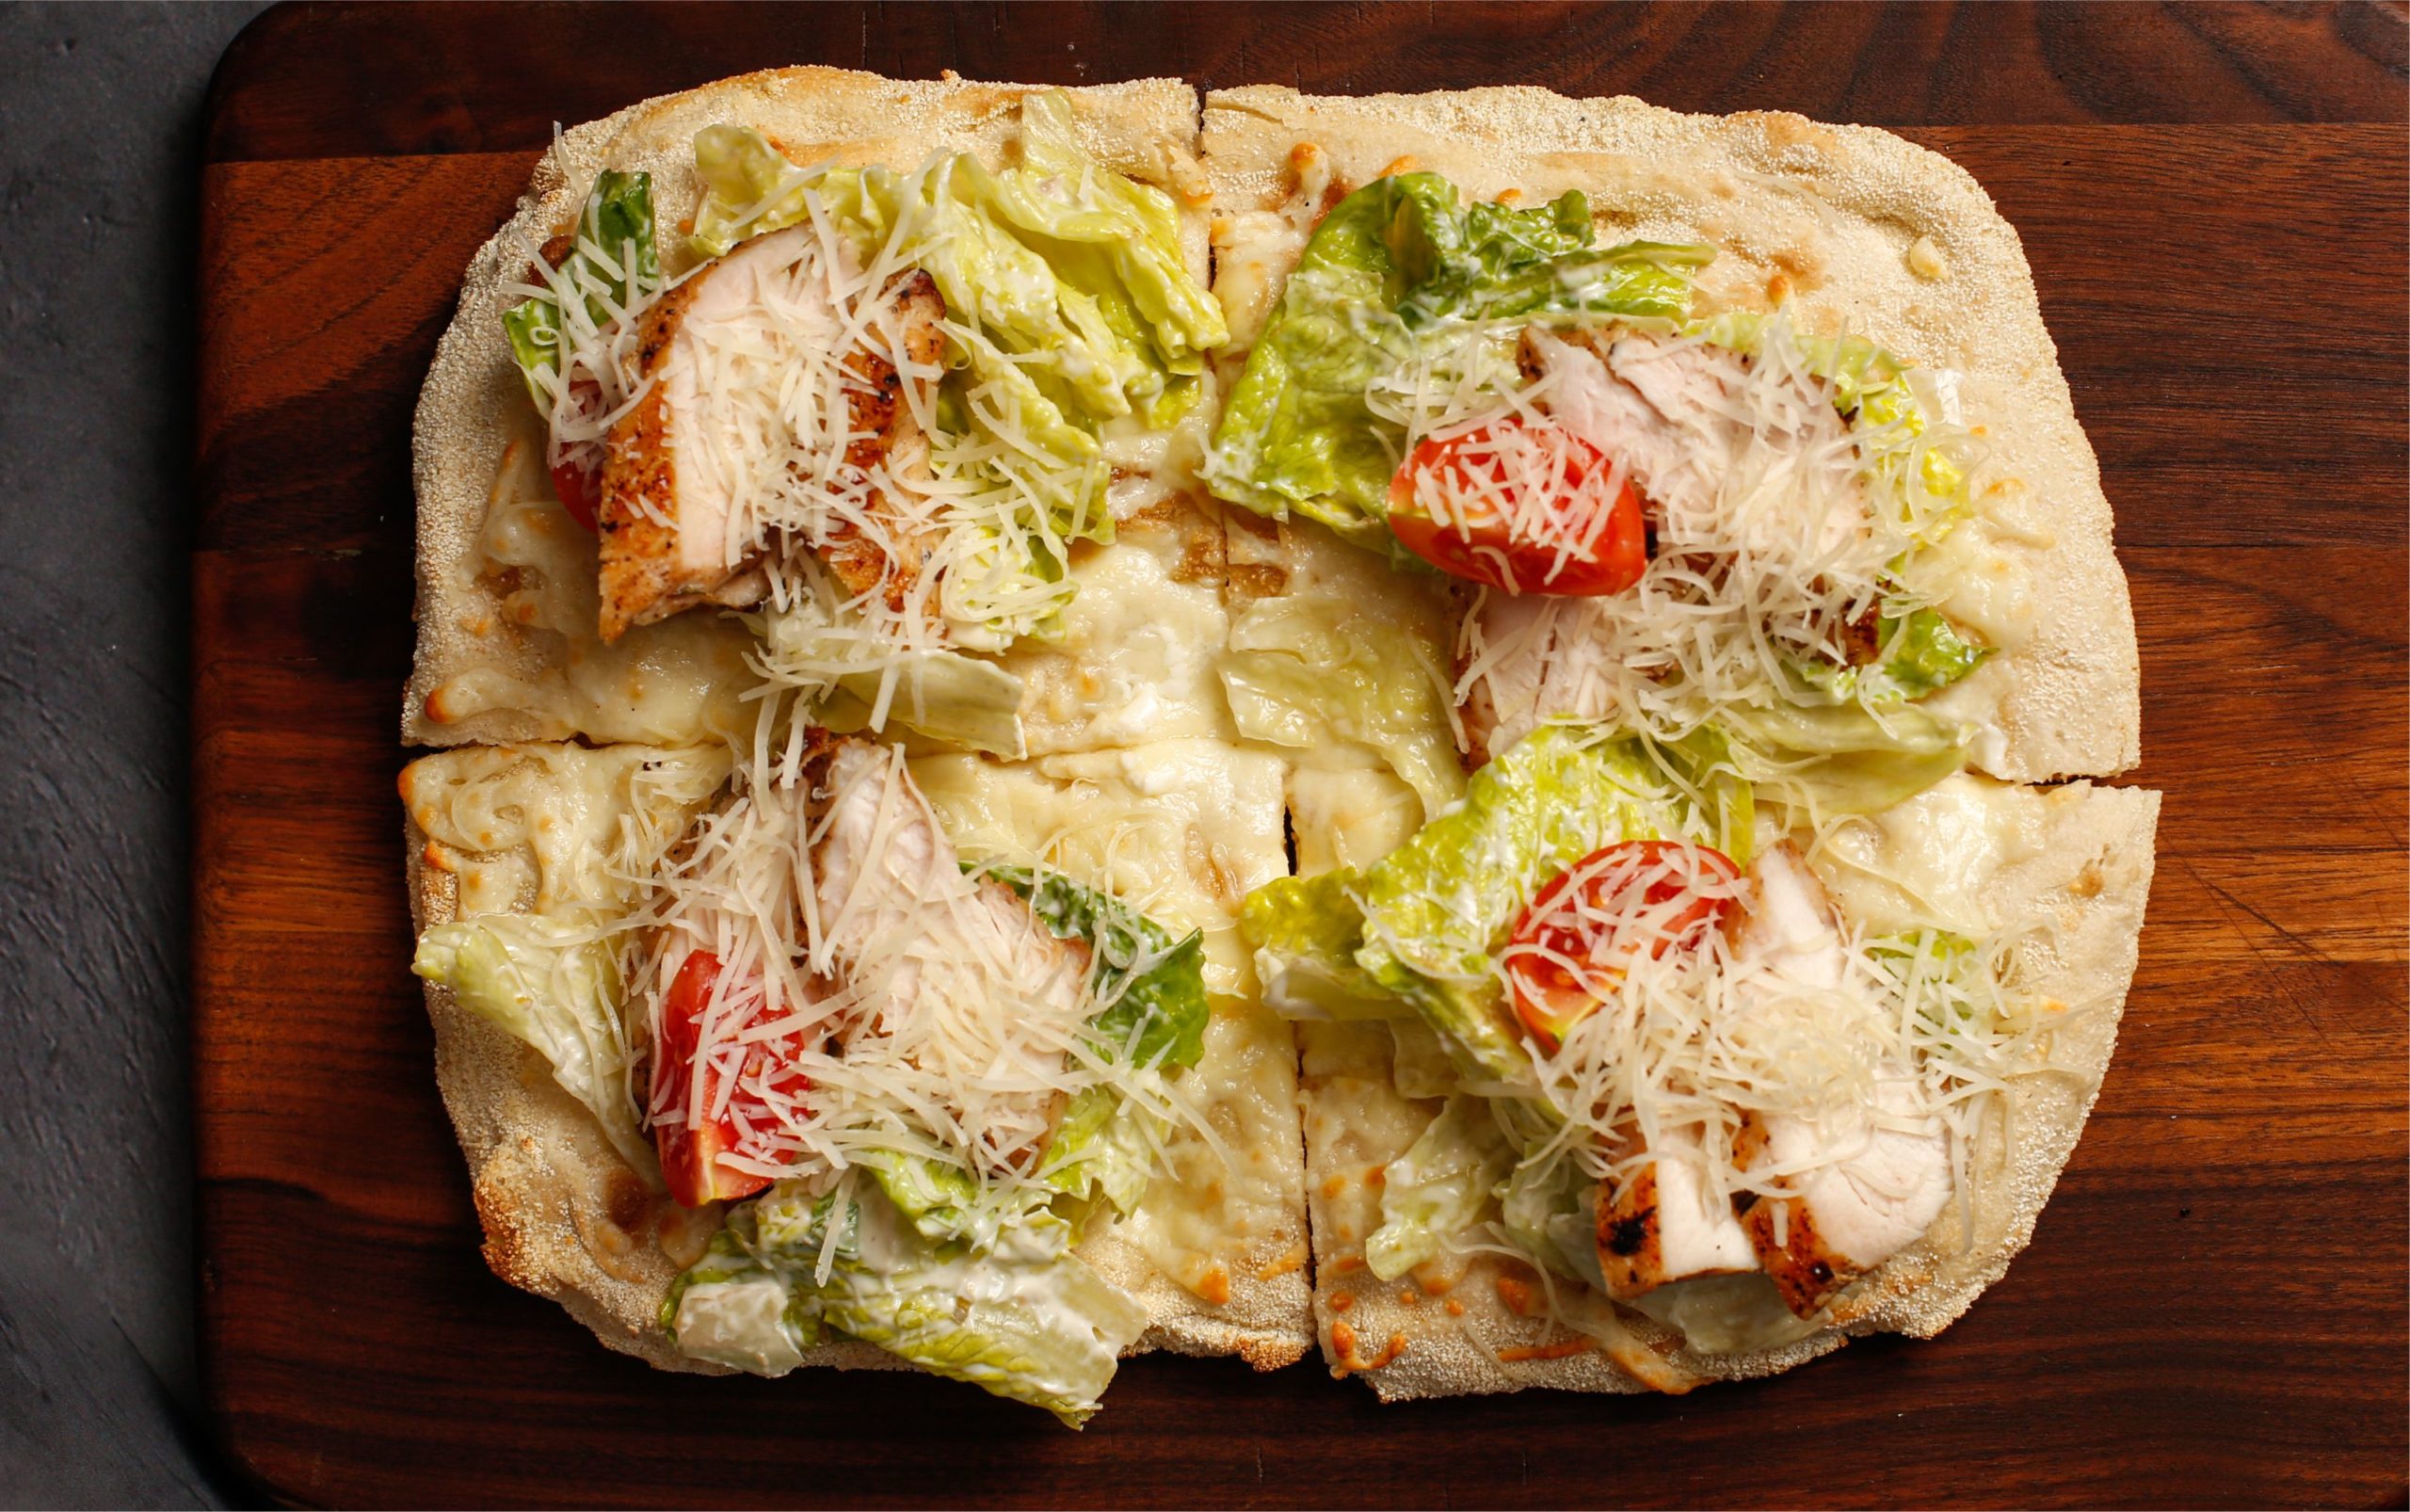 наконец то я могу заказать пиццу с салатом цезарь из курицы фото 97